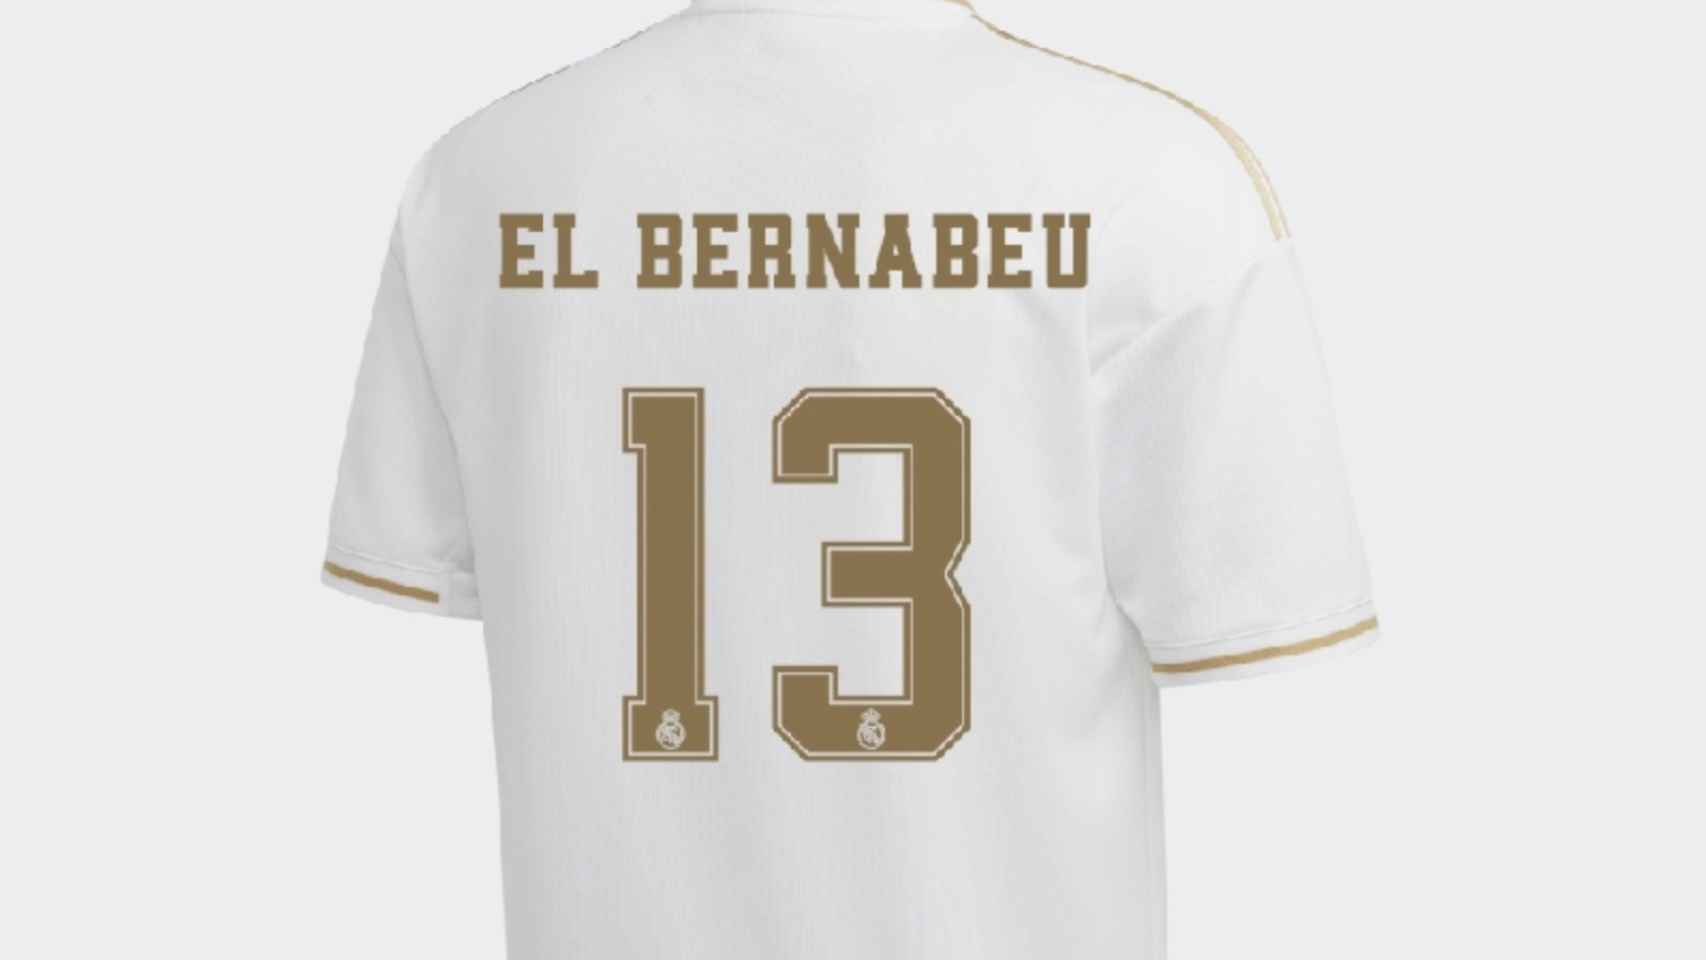 Crear camiseta Real Madrid CF 2019/20 con tu Nombre y Número